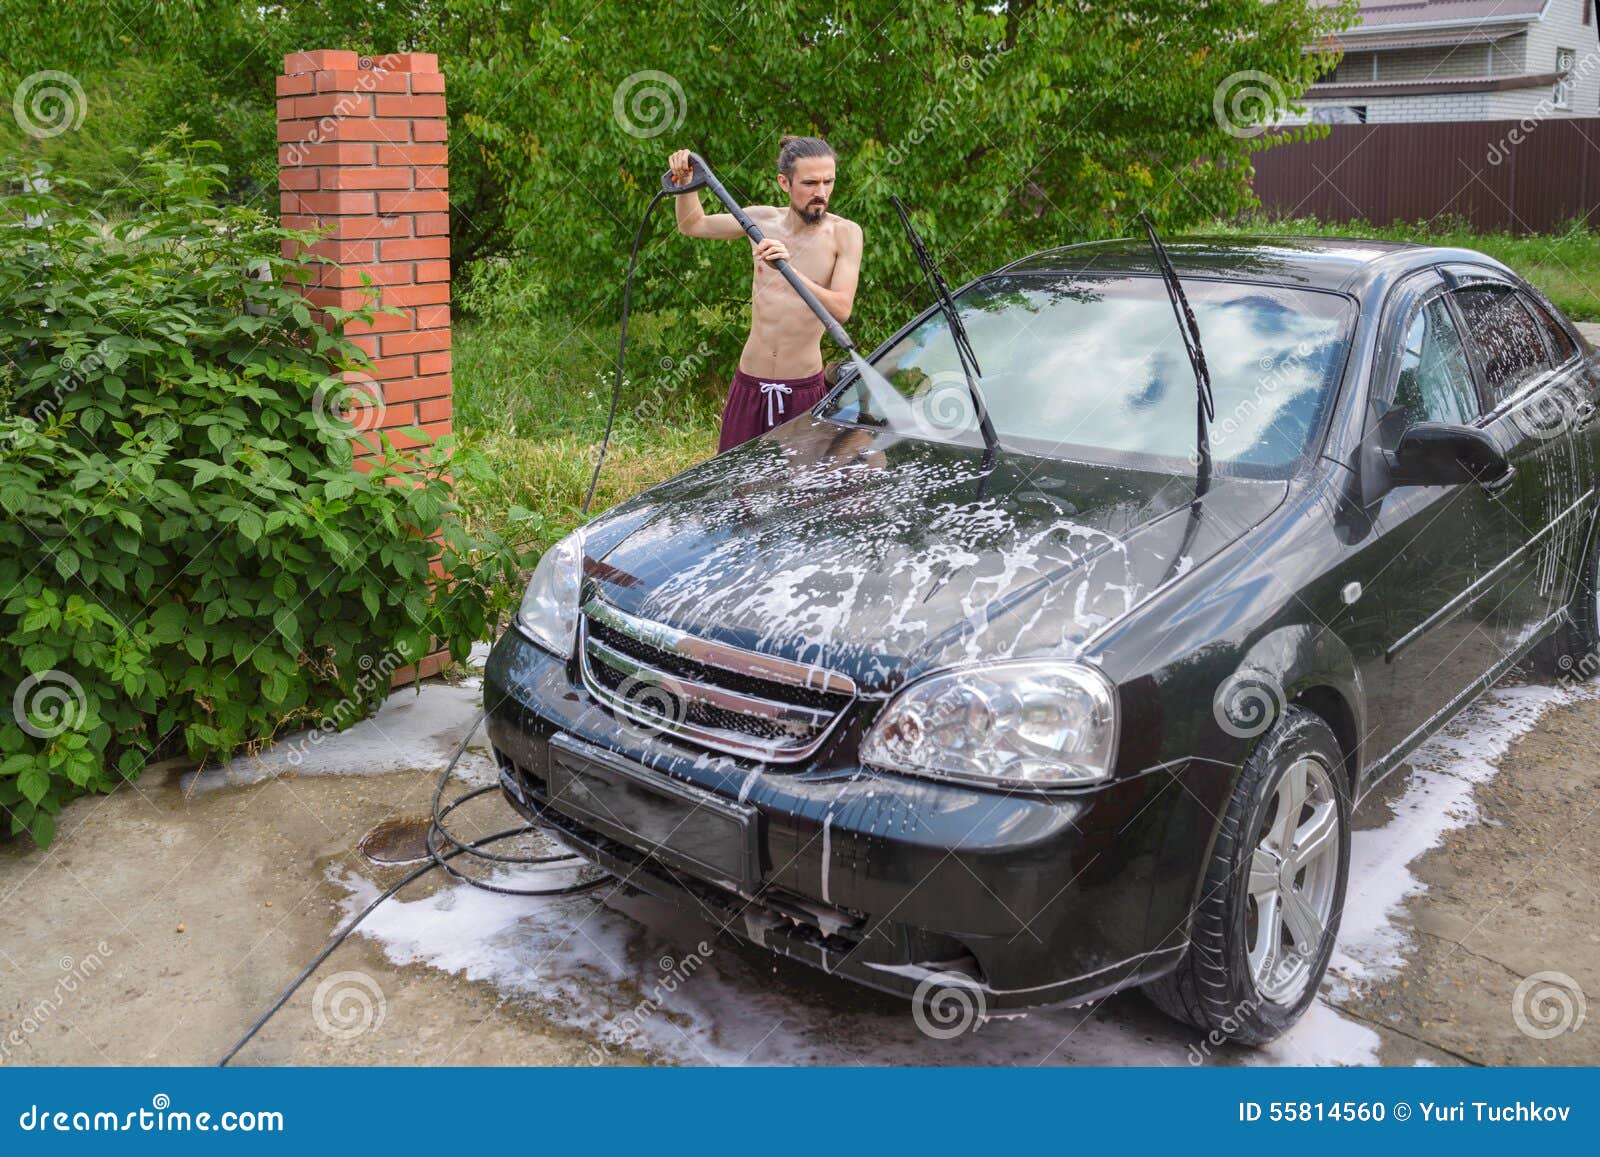 Можно мыть машину возле дома. Мыть машину около частного дома. Сосед моет машину у дома. Машину мыли возле дома фото. Помывка машины с балкона из шланга карикатура.